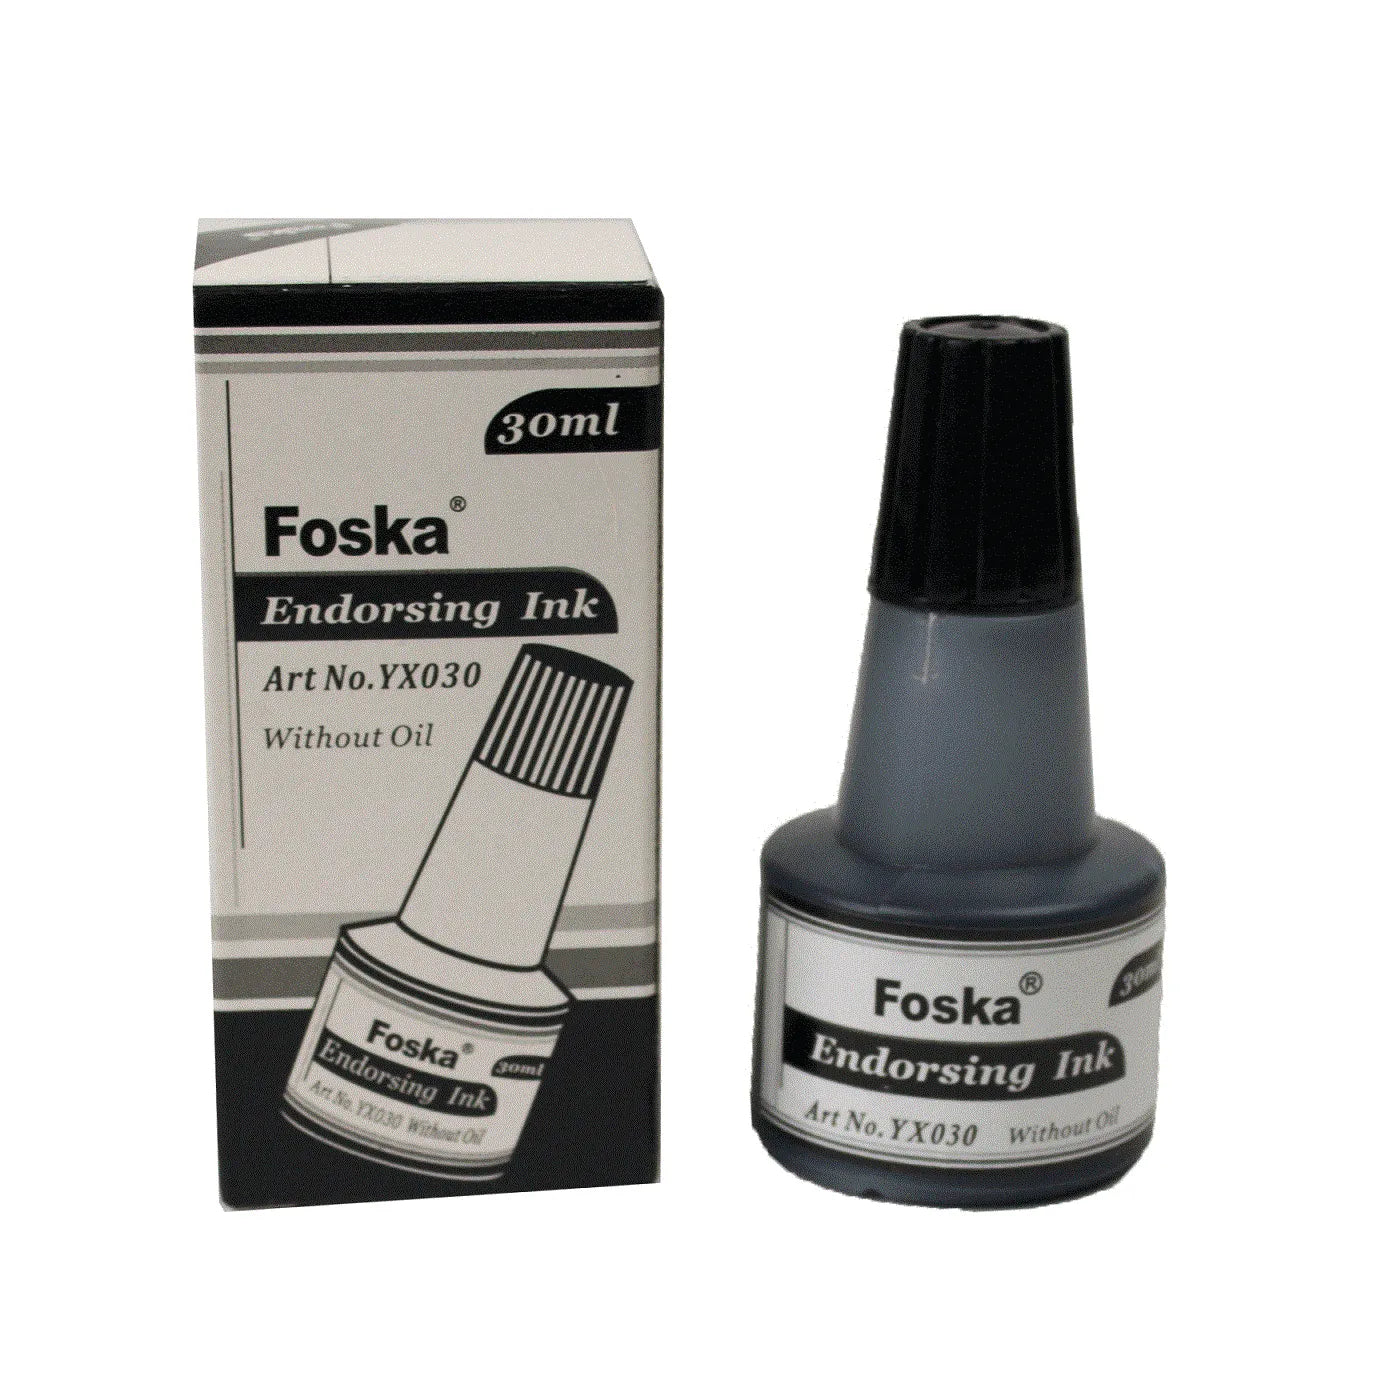 Foska Endorsing Ink